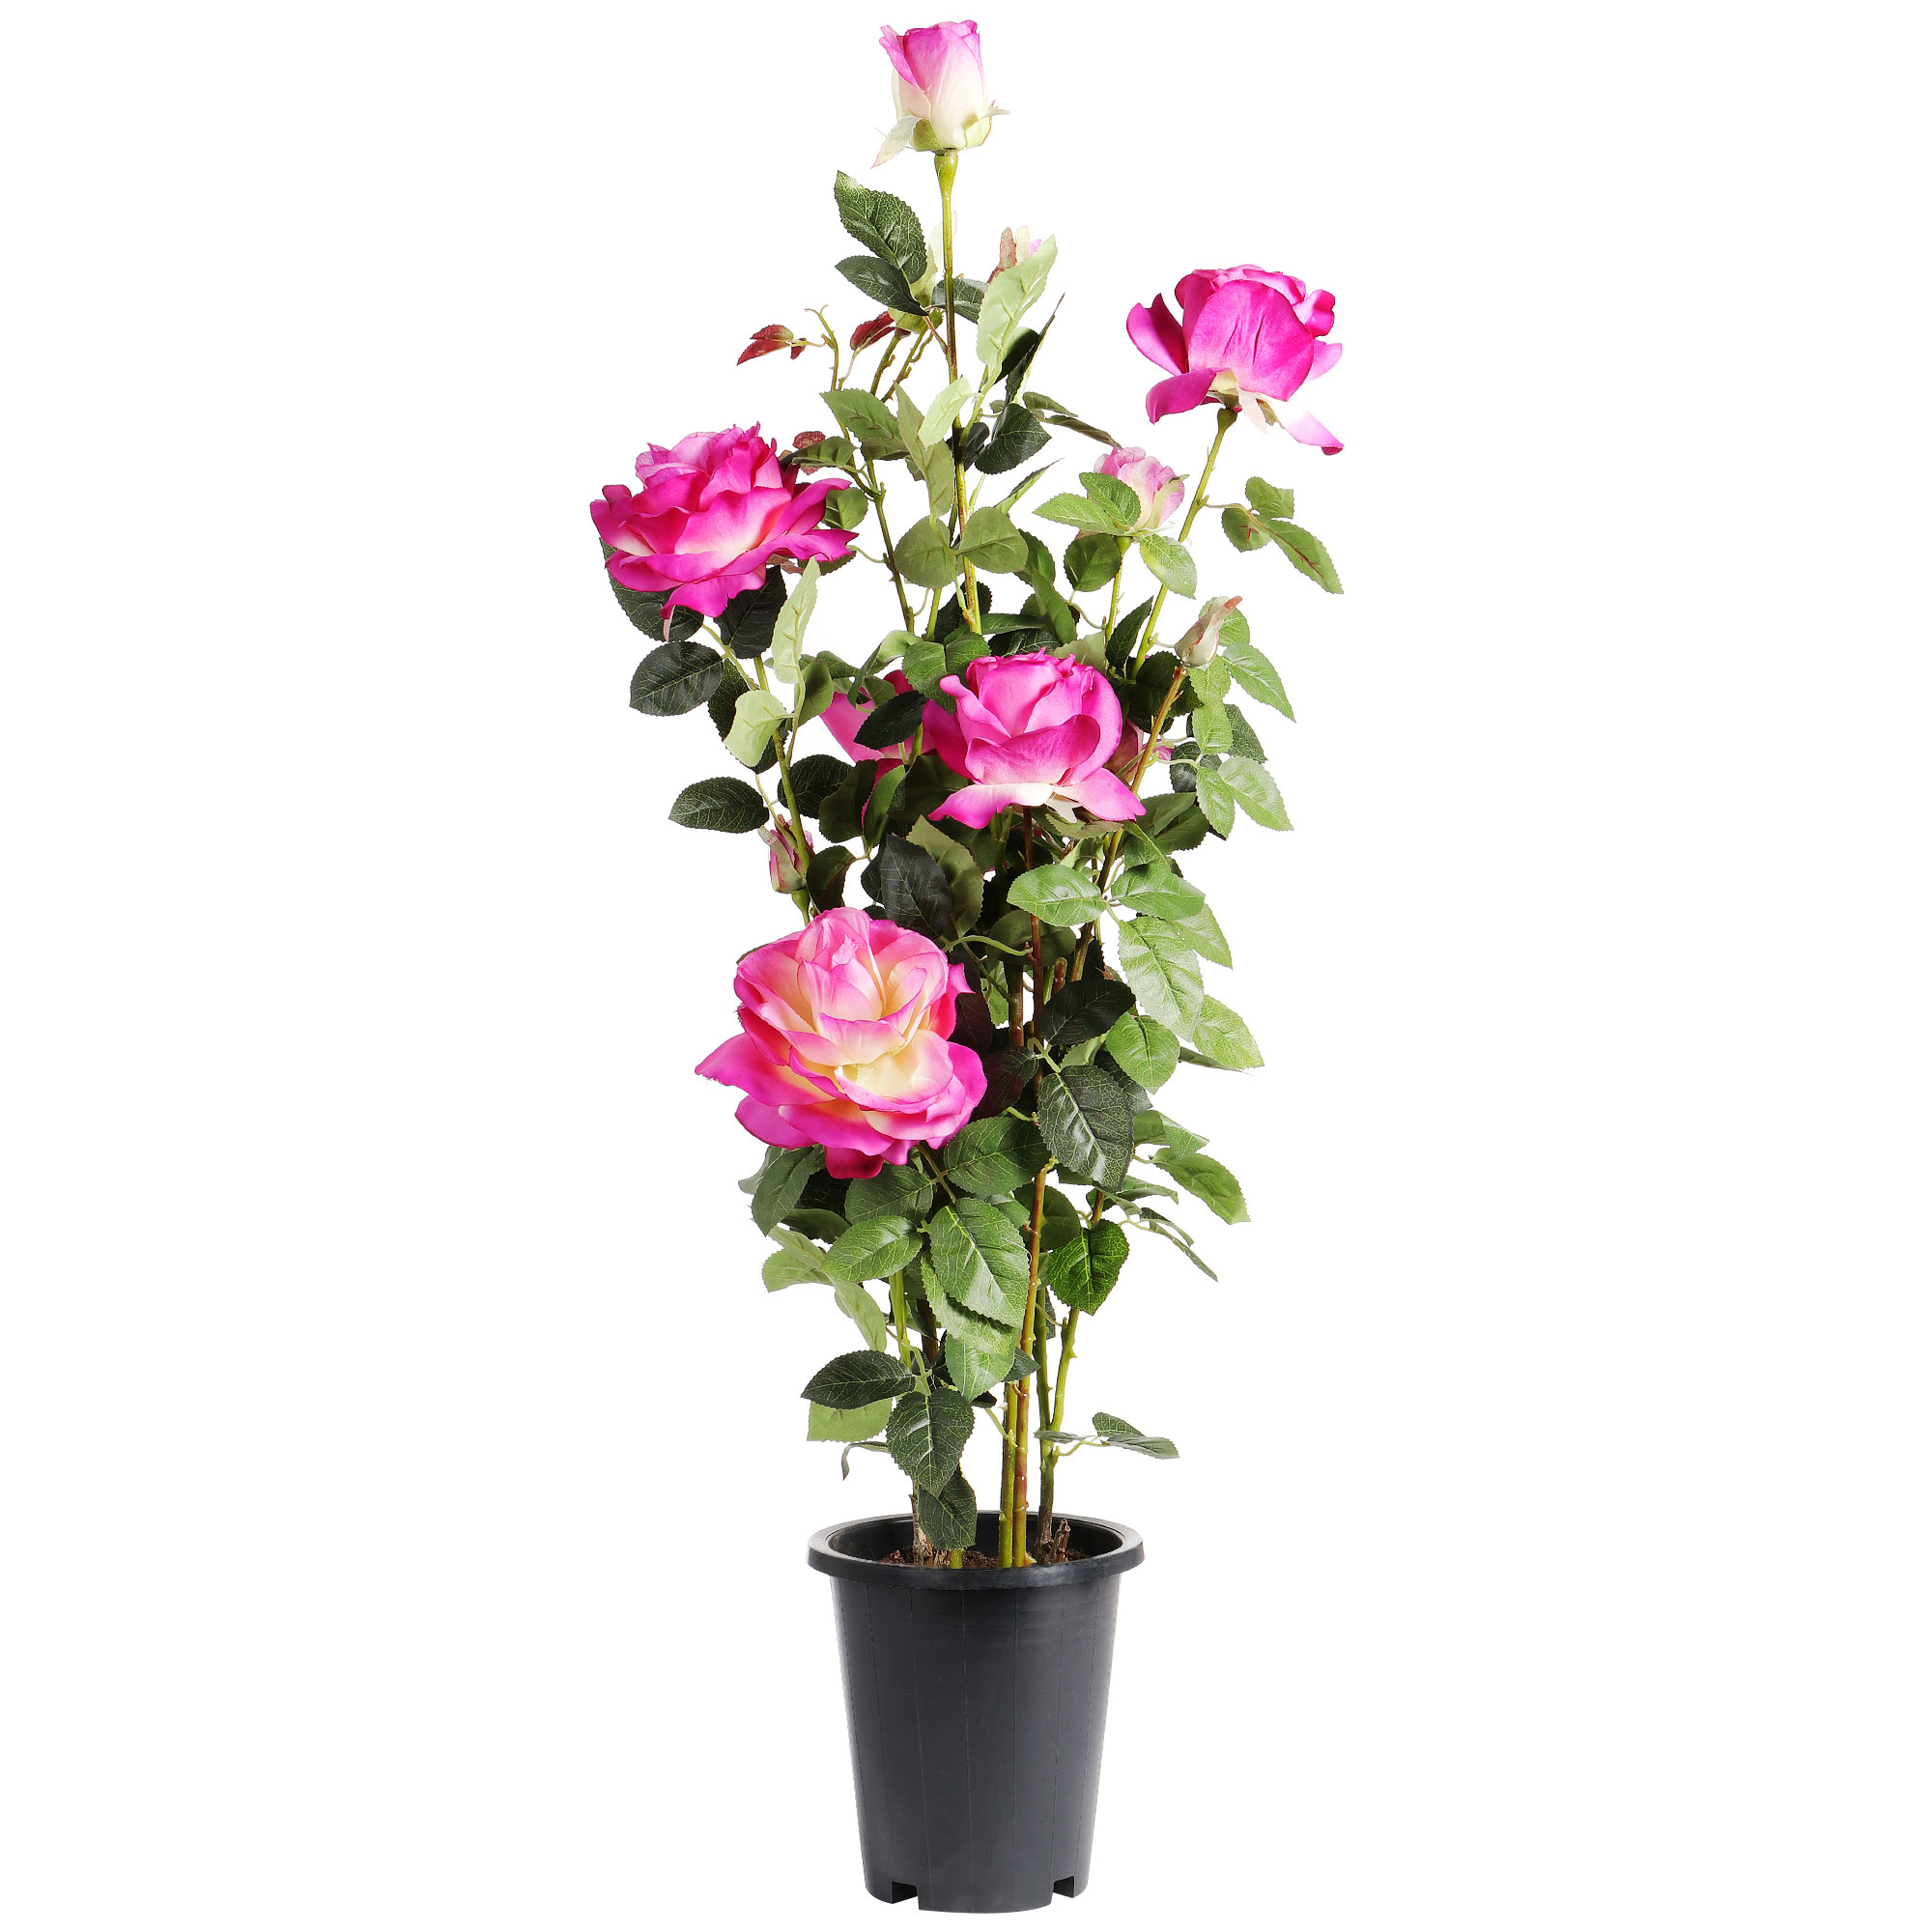 бомбочка для ванны 110 гр бело розовая фруктовая роза сердце body spa Искусственное растение Tianjin тёмно-розовая роза в кашпо 102 см